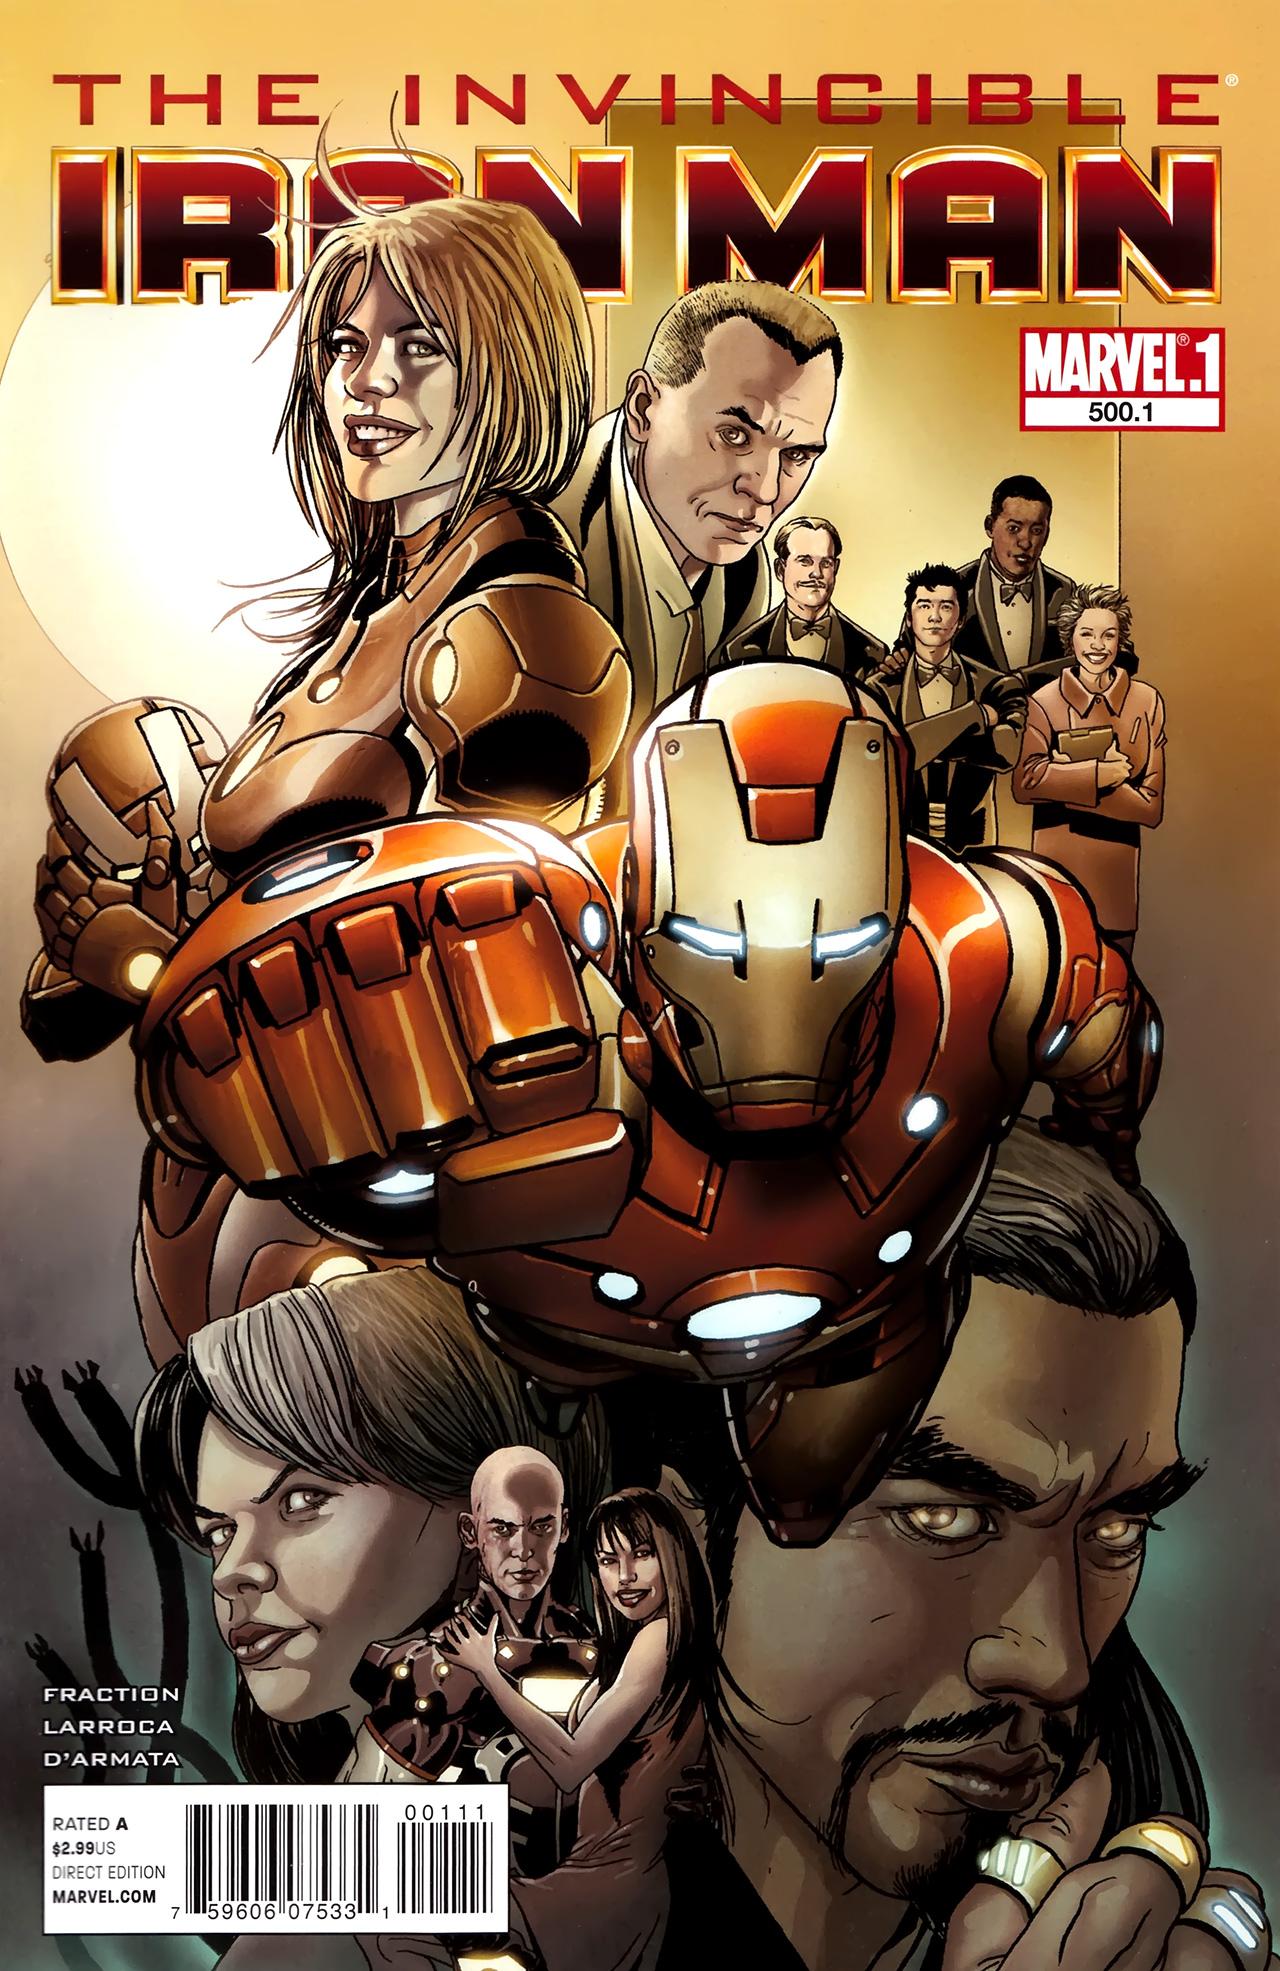 Invincible Iron Man Vol. 1 #500.1